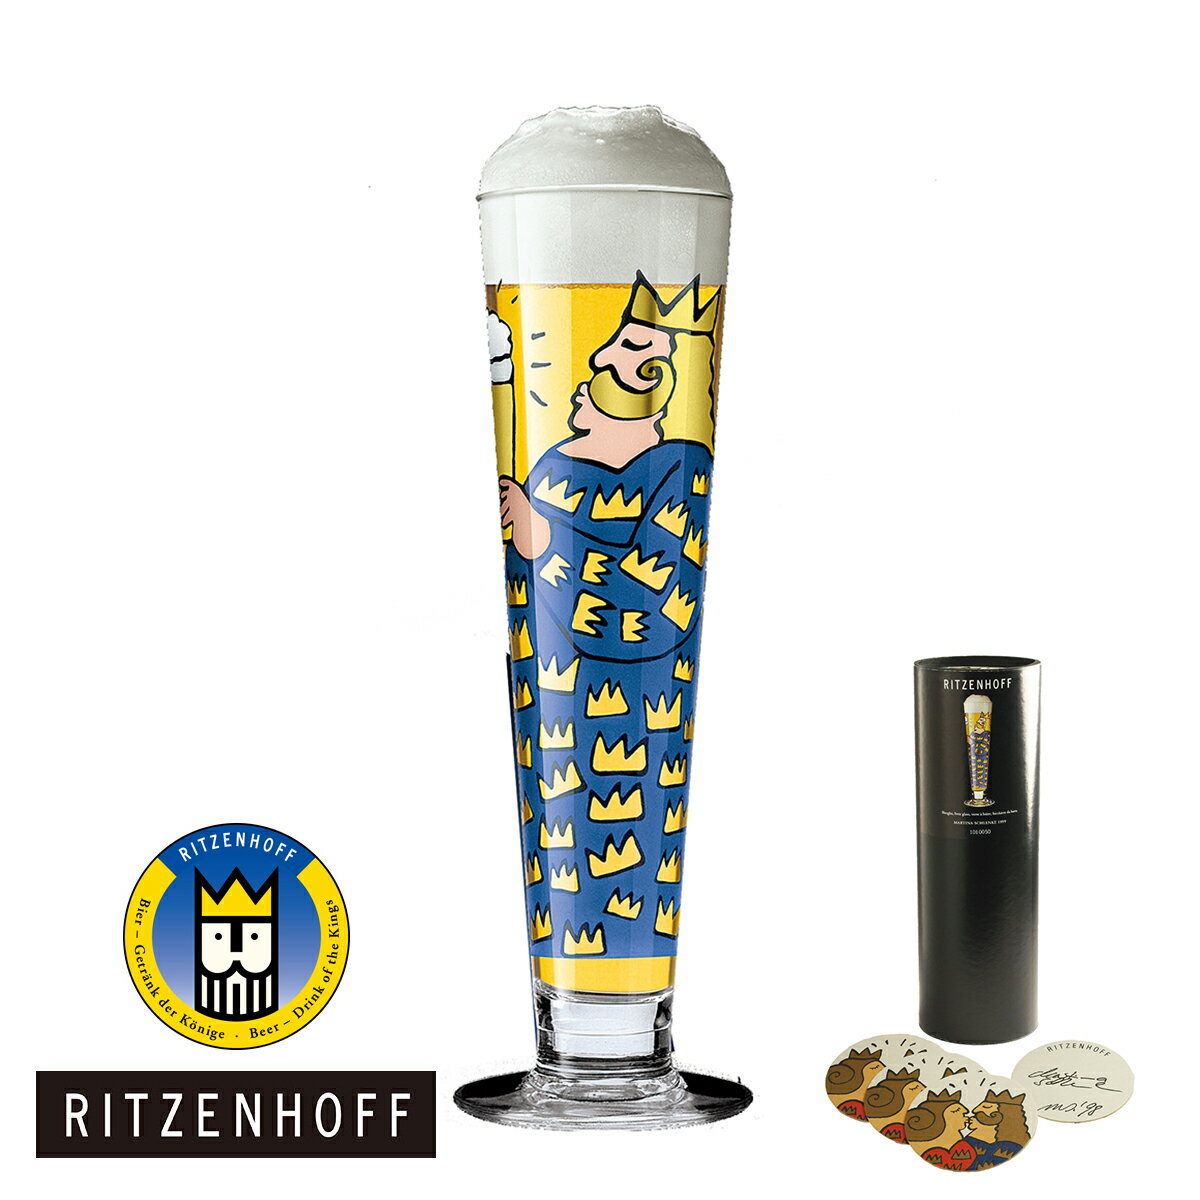 RITZENHOFF リッツェンホフ BEER ビアグラス（王様と王妃がビールで乾杯するポップな絵柄は、MARTINA SCHLENKE) Beer Crystal Collection ビールグラス ビア グラス ビール プレゼント・贈り物・ギフト